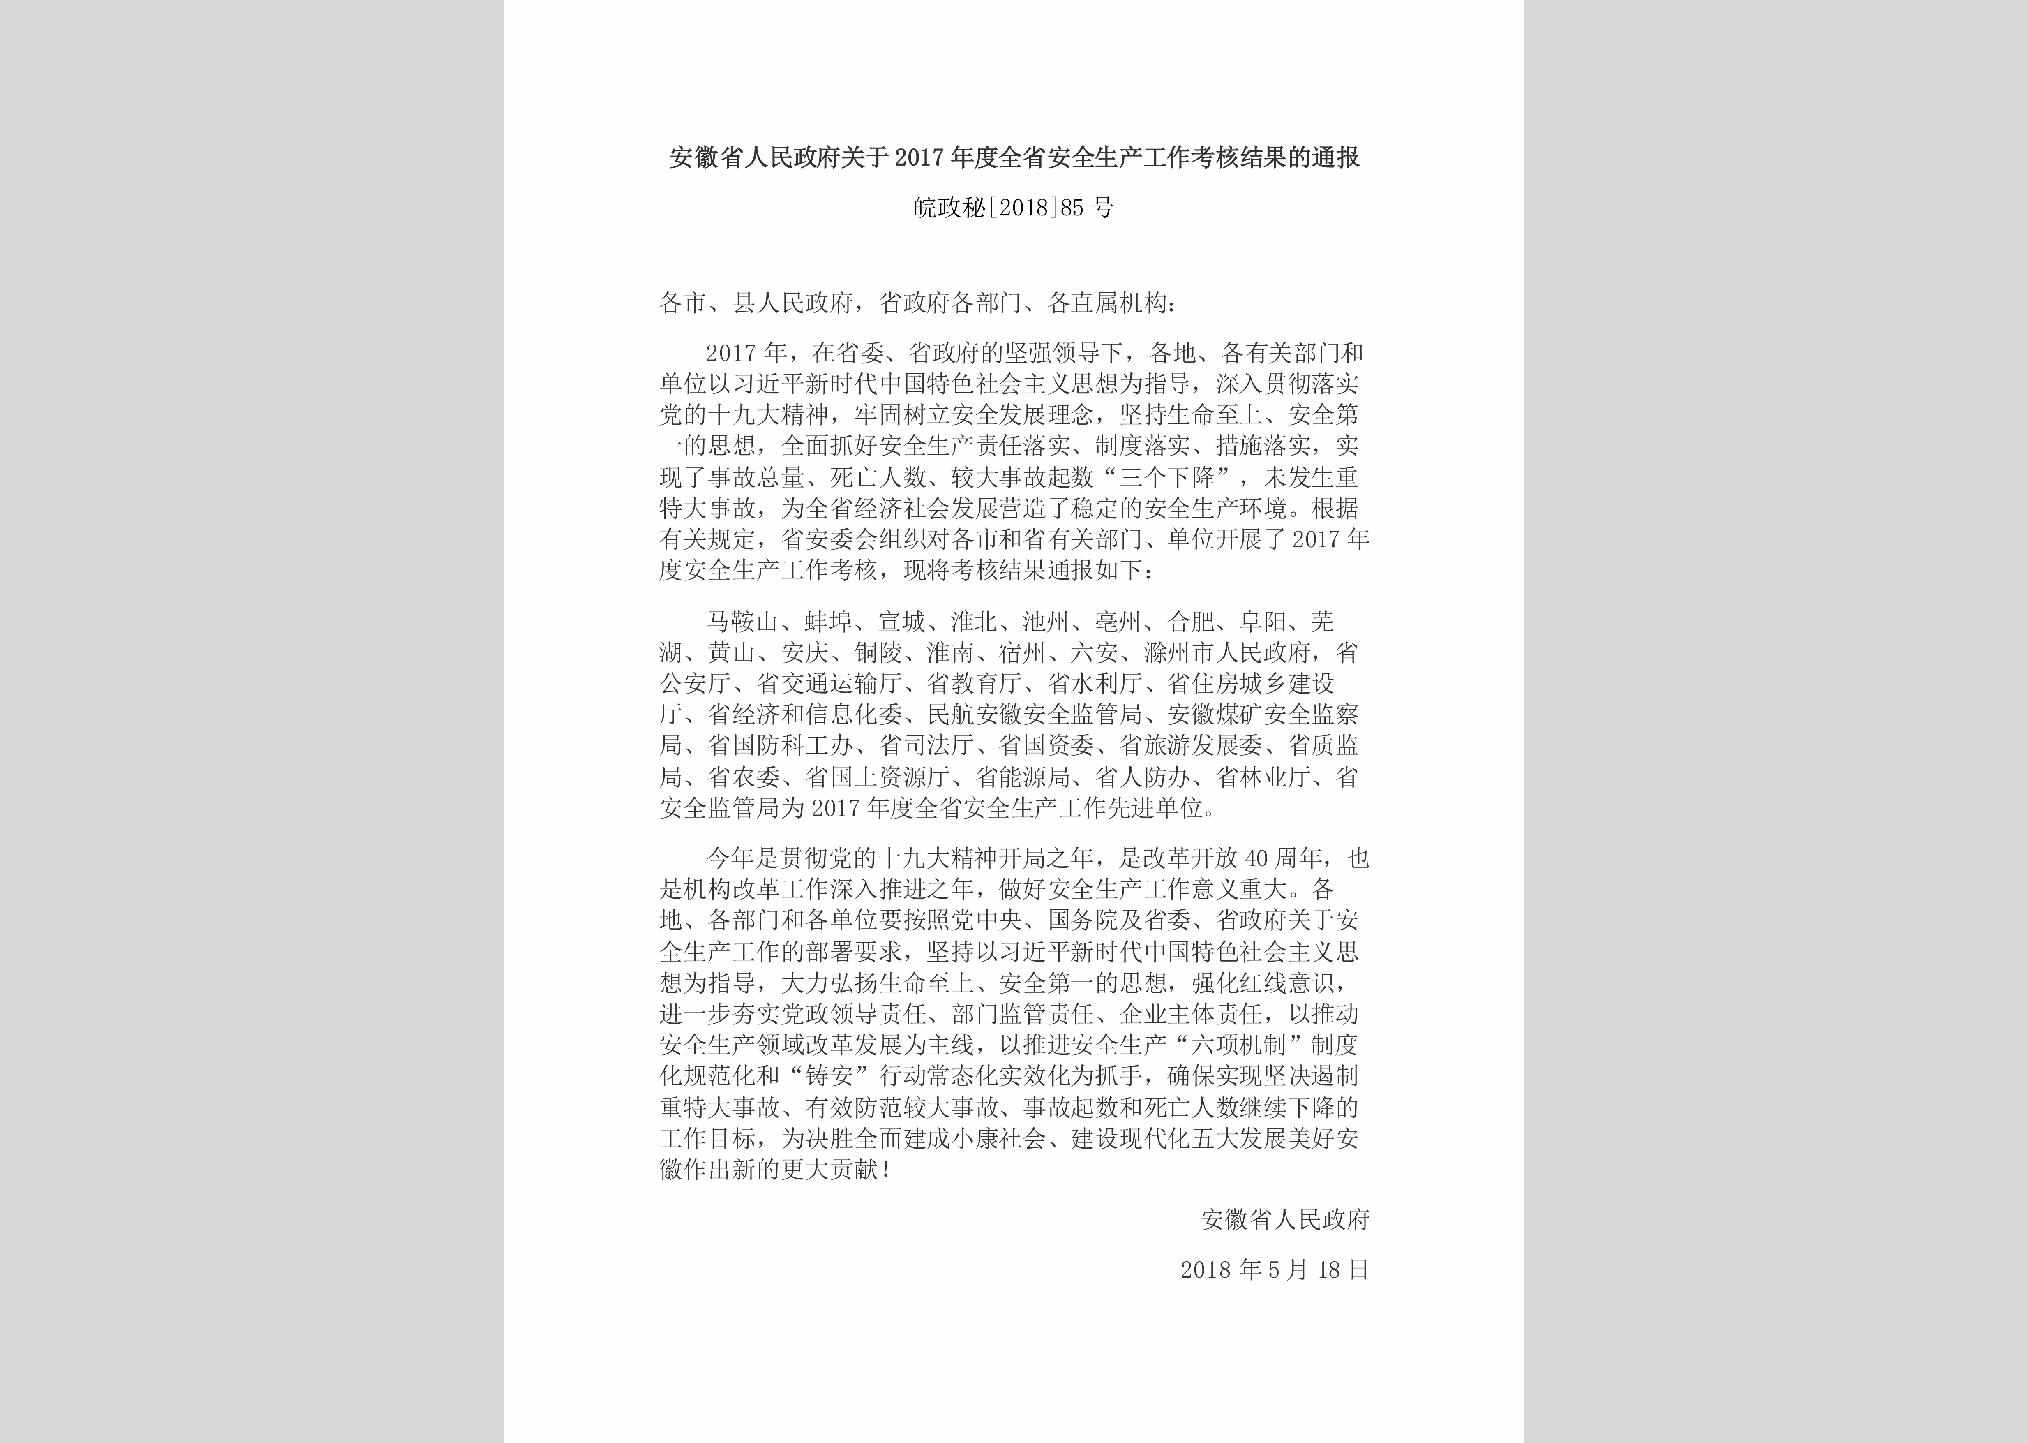 皖政秘[2018]85号：安徽省人民政府关于2017年度全省安全生产工作考核结果的通报